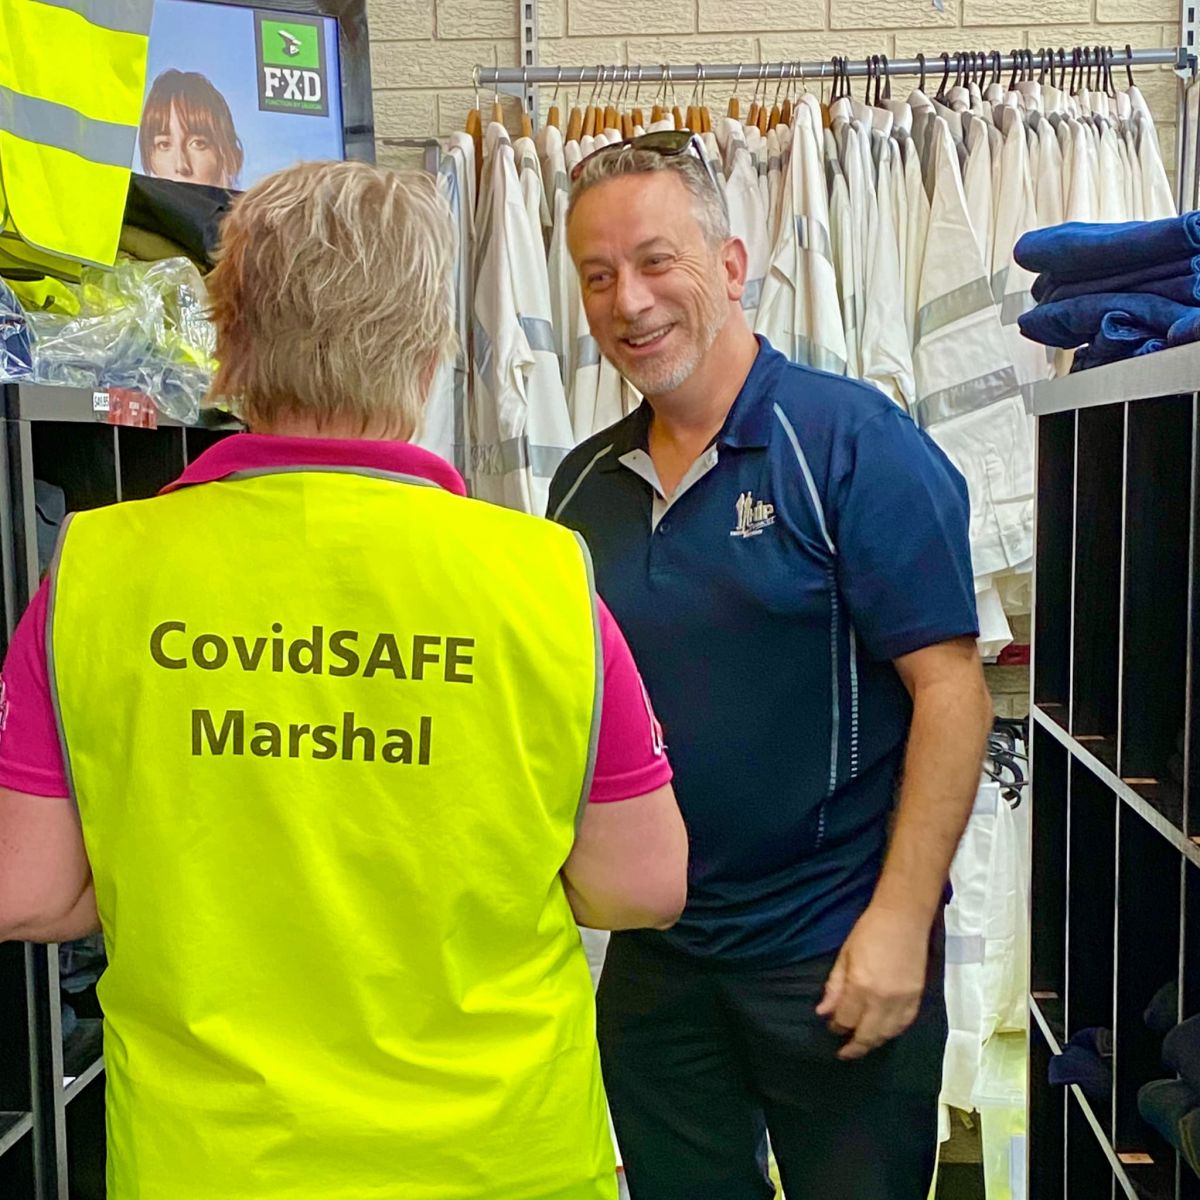 covid safe marshal vest